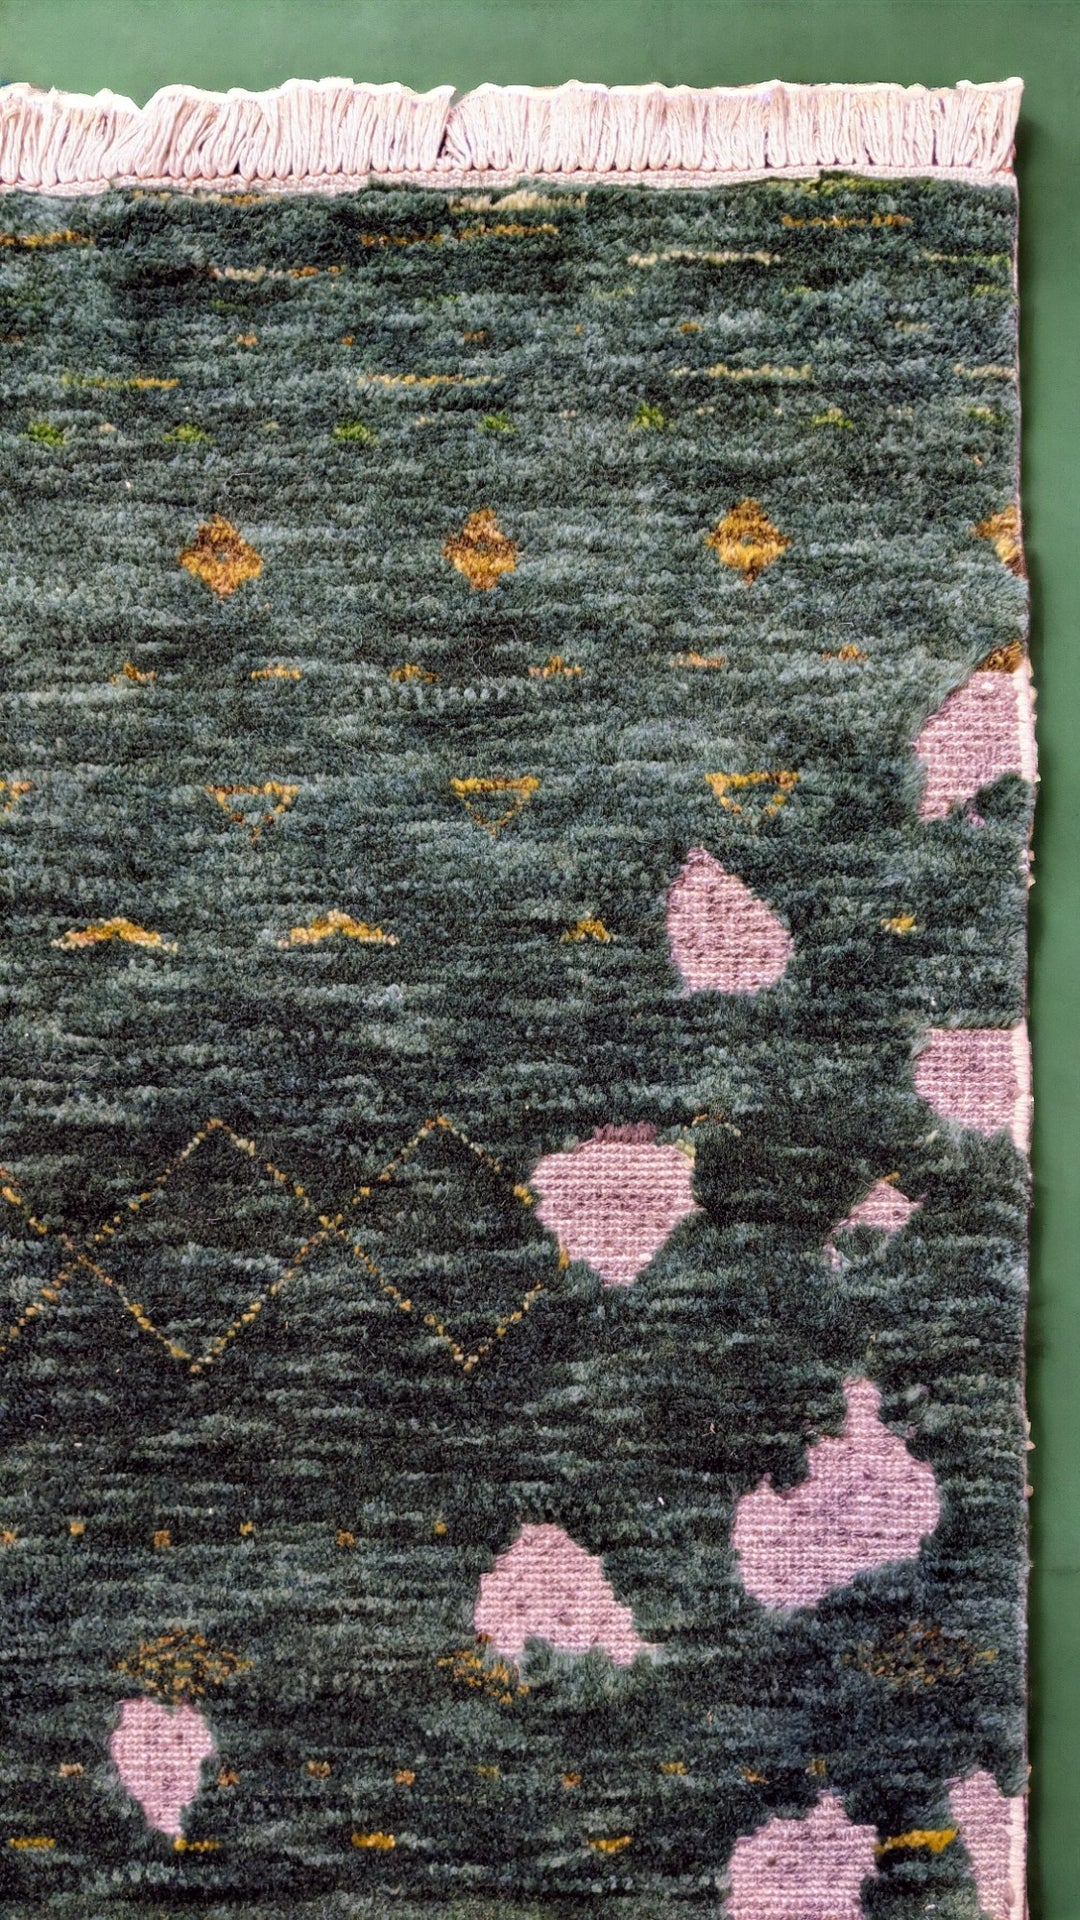 Afra - Size: 8.3 x 5.2 - Imam Carpet Co